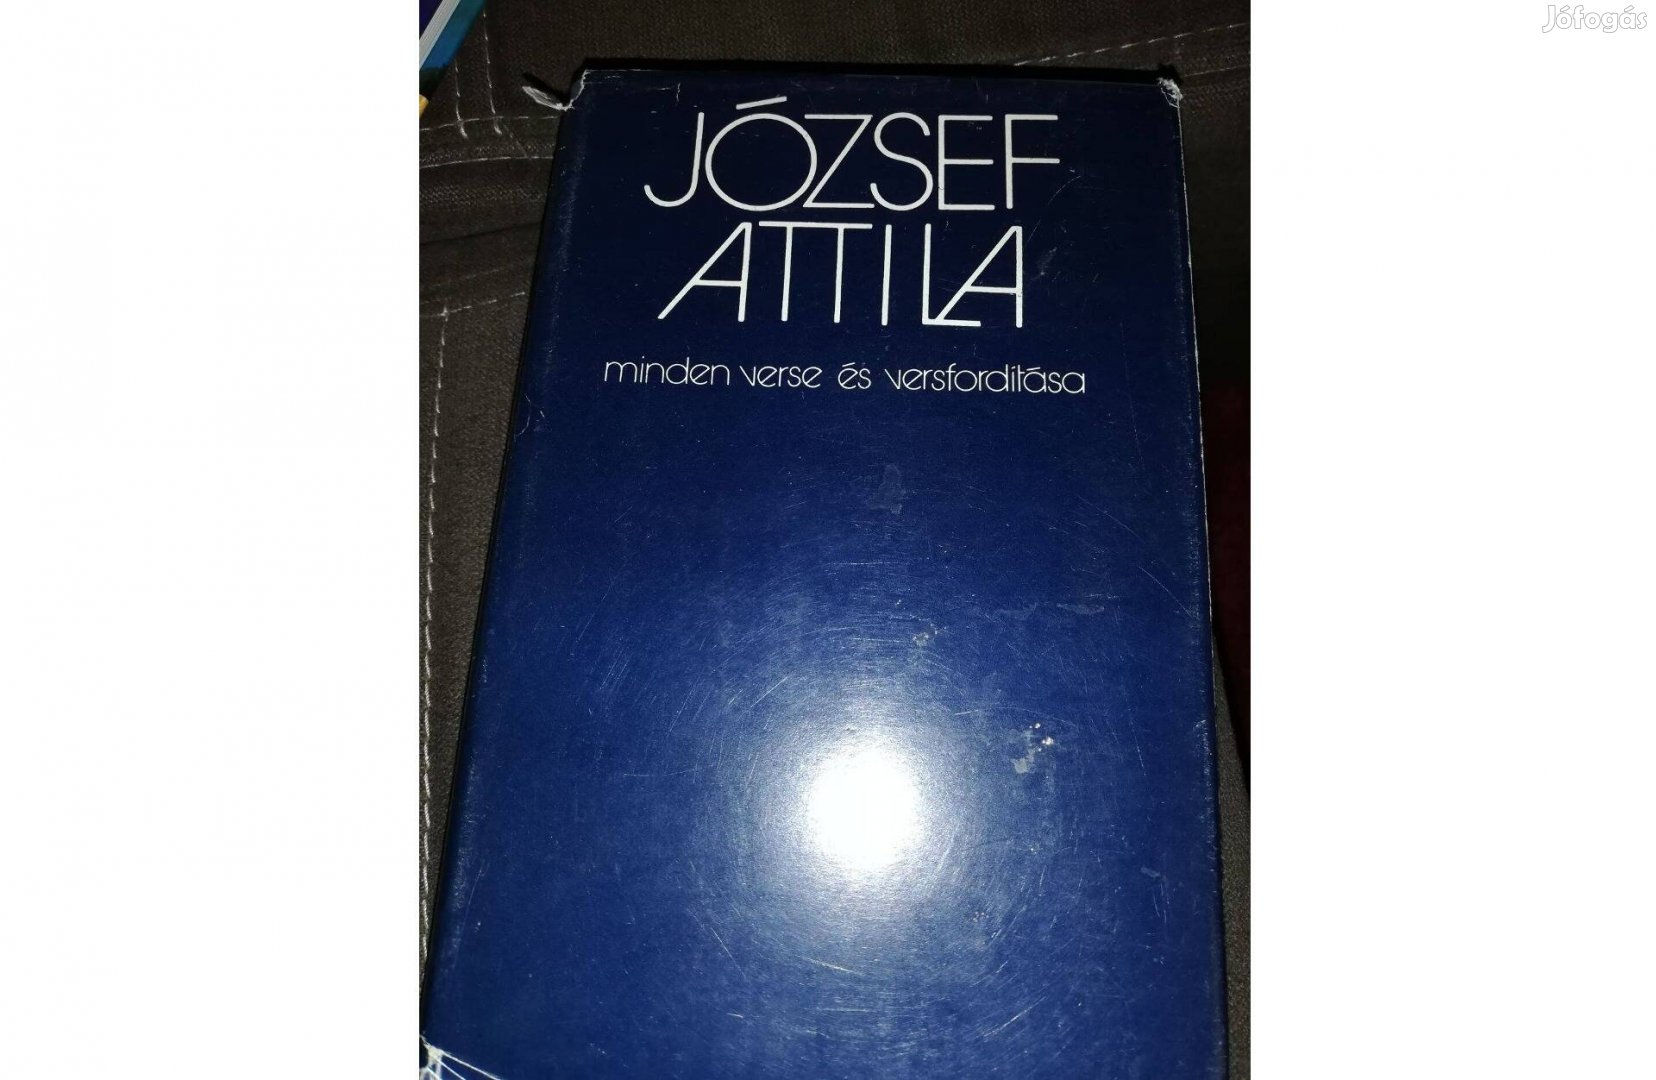 József Attila minden verse és versfordítása 600 forintért eladó